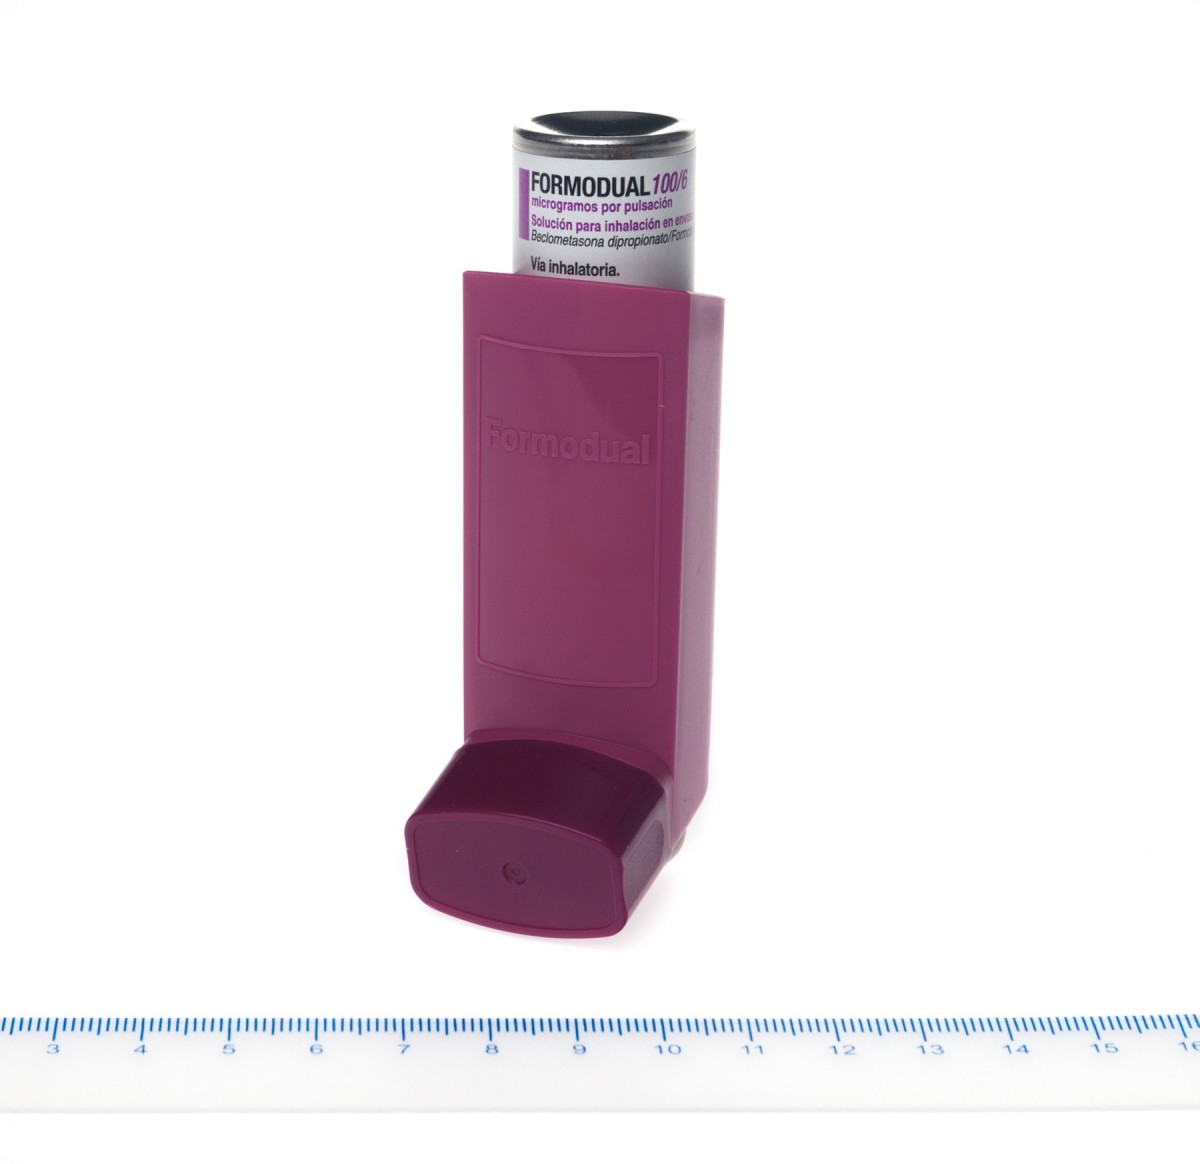 FORMODUAL 100 MICROGRAMOS /6 MICROGRAMOS/PULSACION SOLUCION PARA INHALACION EN ENVASE A PRESION, 1 inhalador de 120 dosis fotografía de la forma farmacéutica.